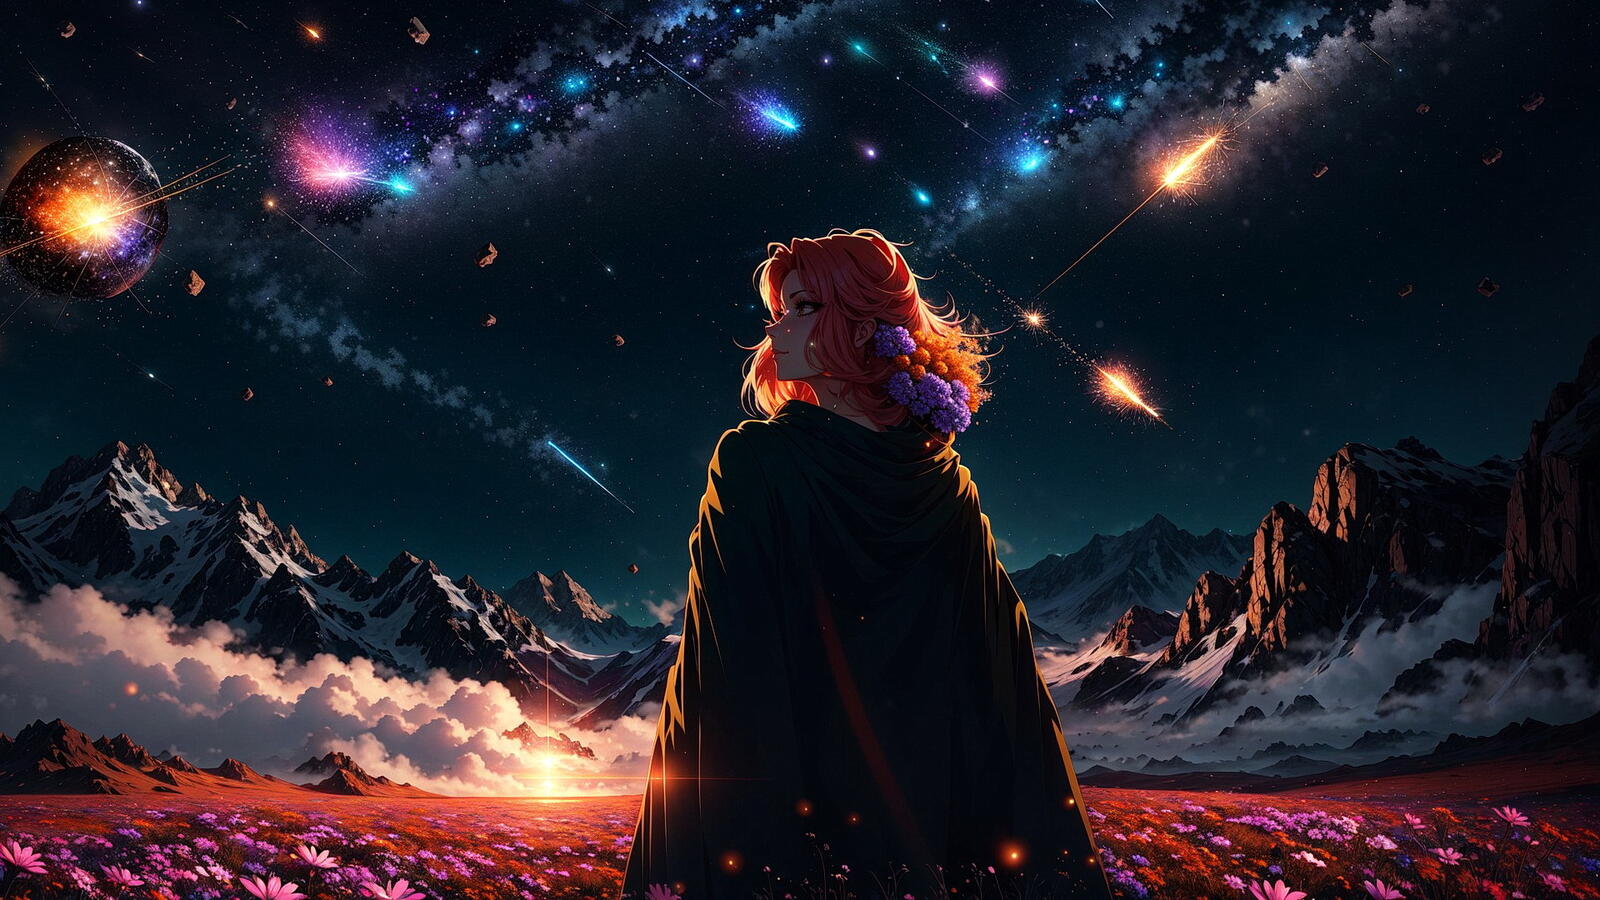 免费照片披着斗篷的红发女孩与山景和星空相映成趣